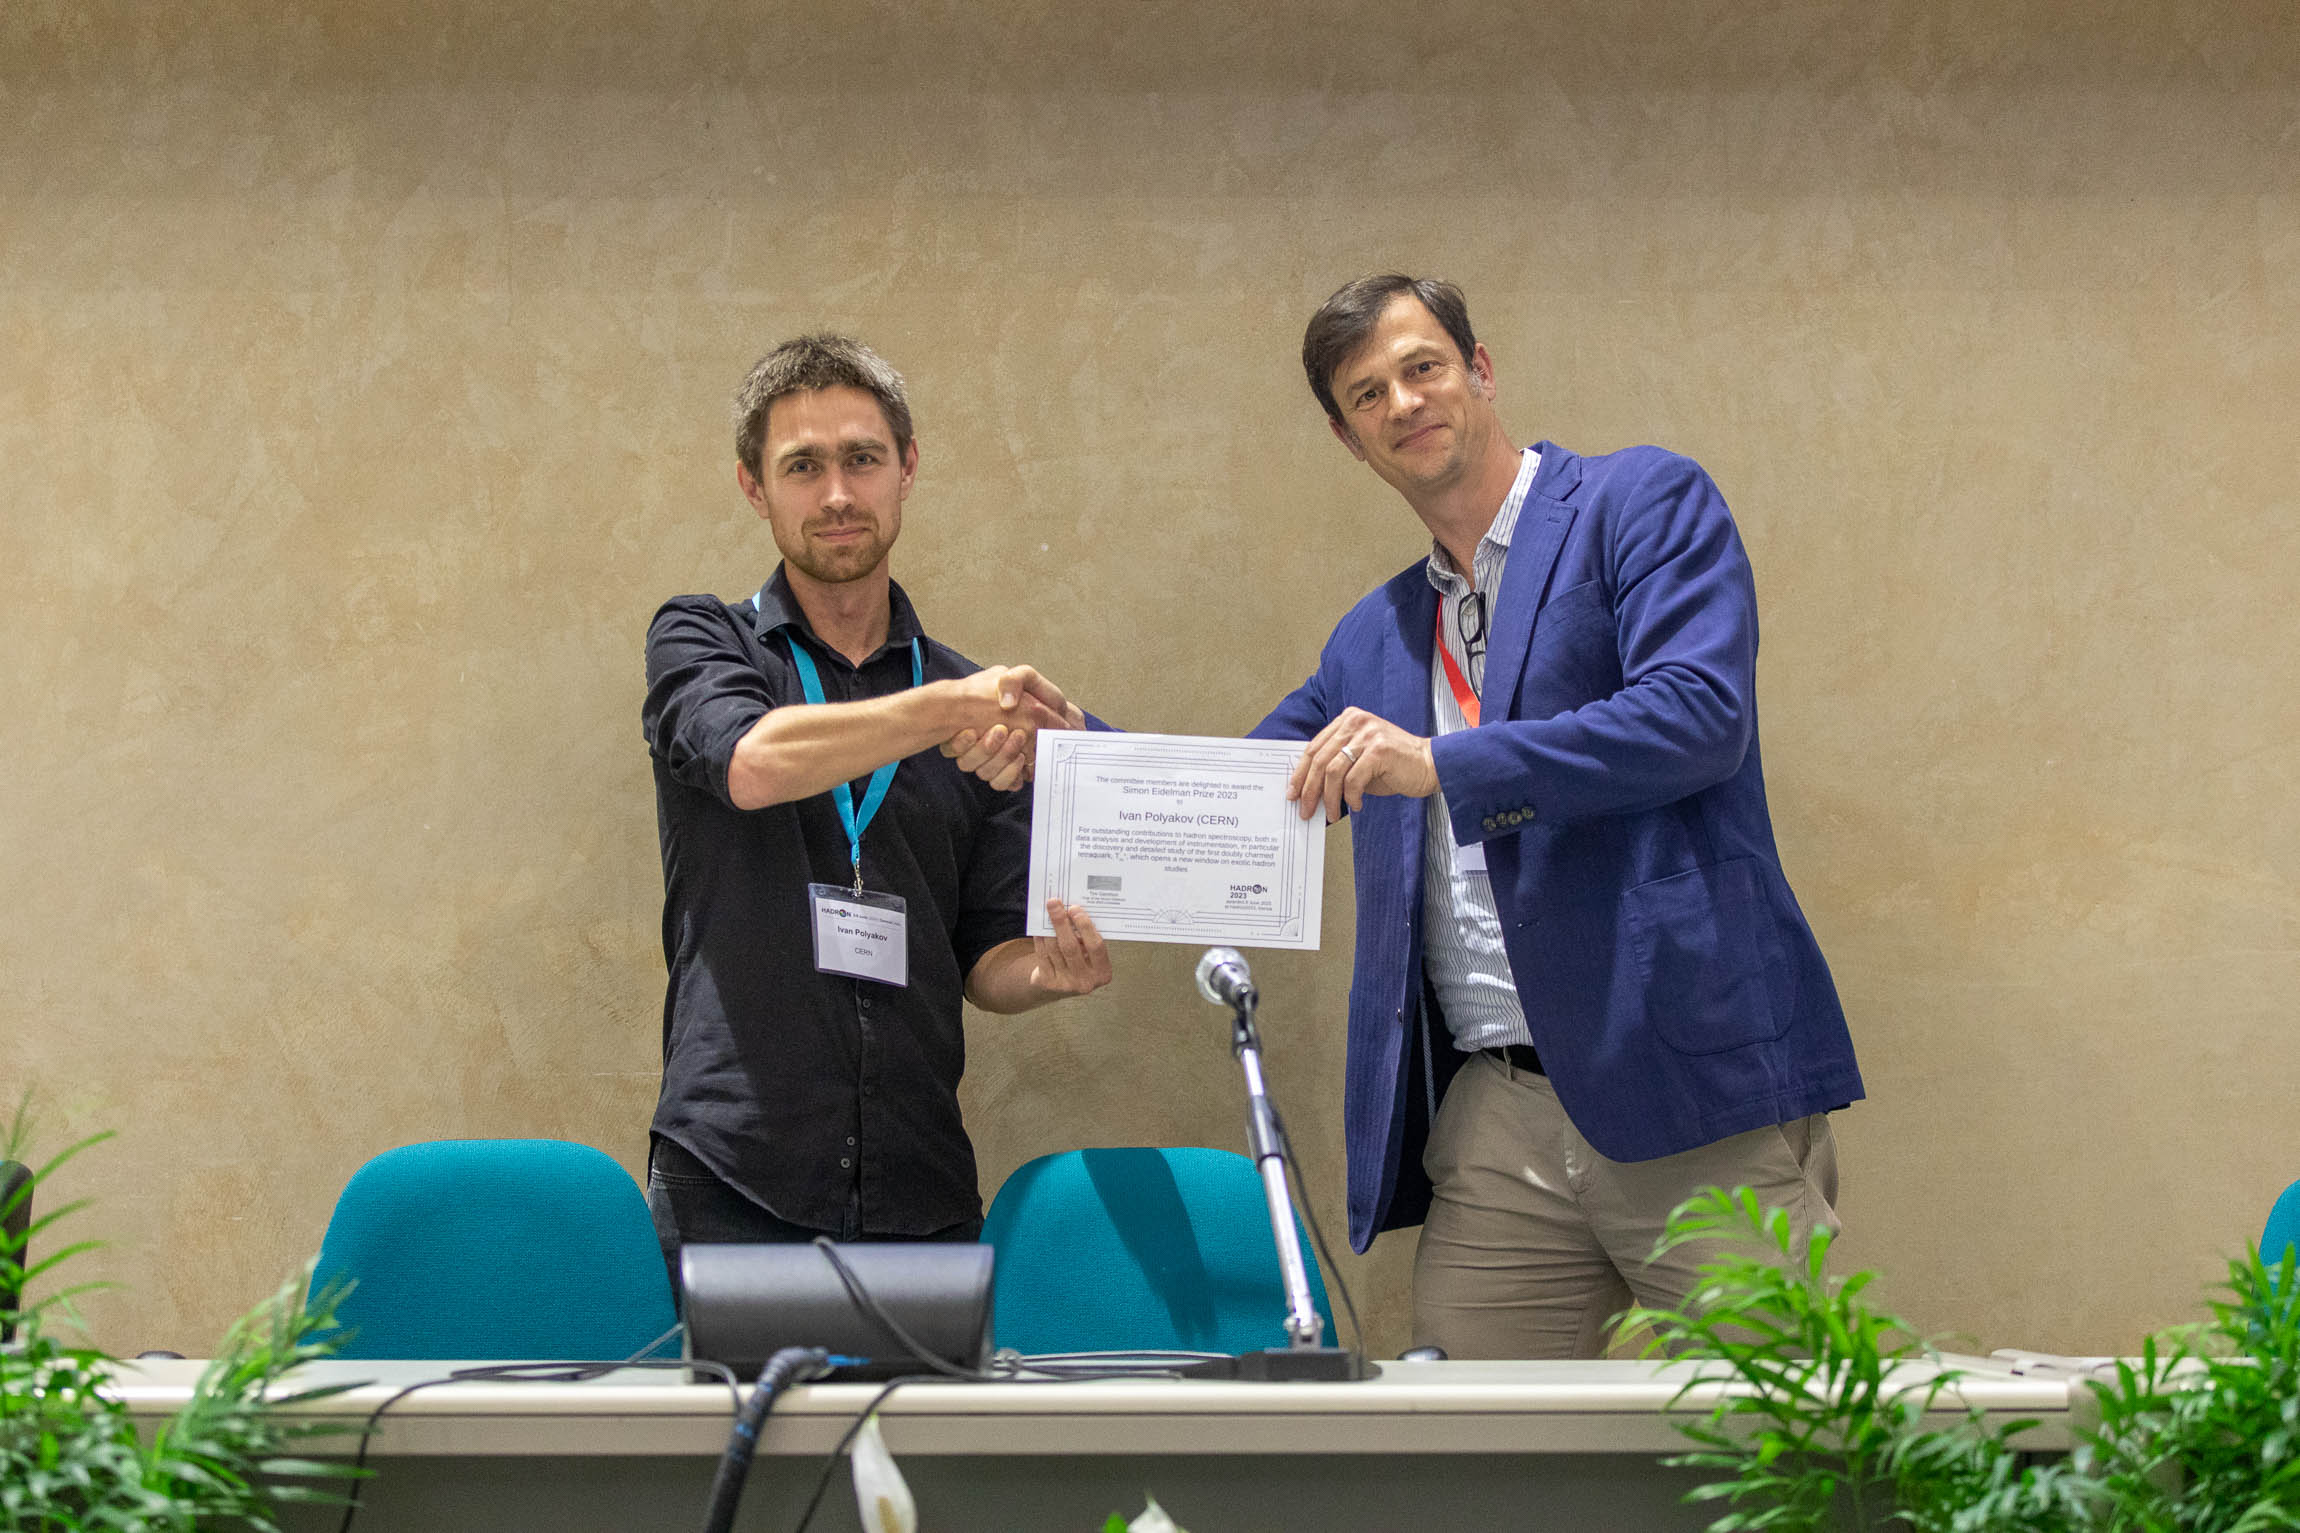 Tim Gershon awarding prize certificate to Ivan Polyakov